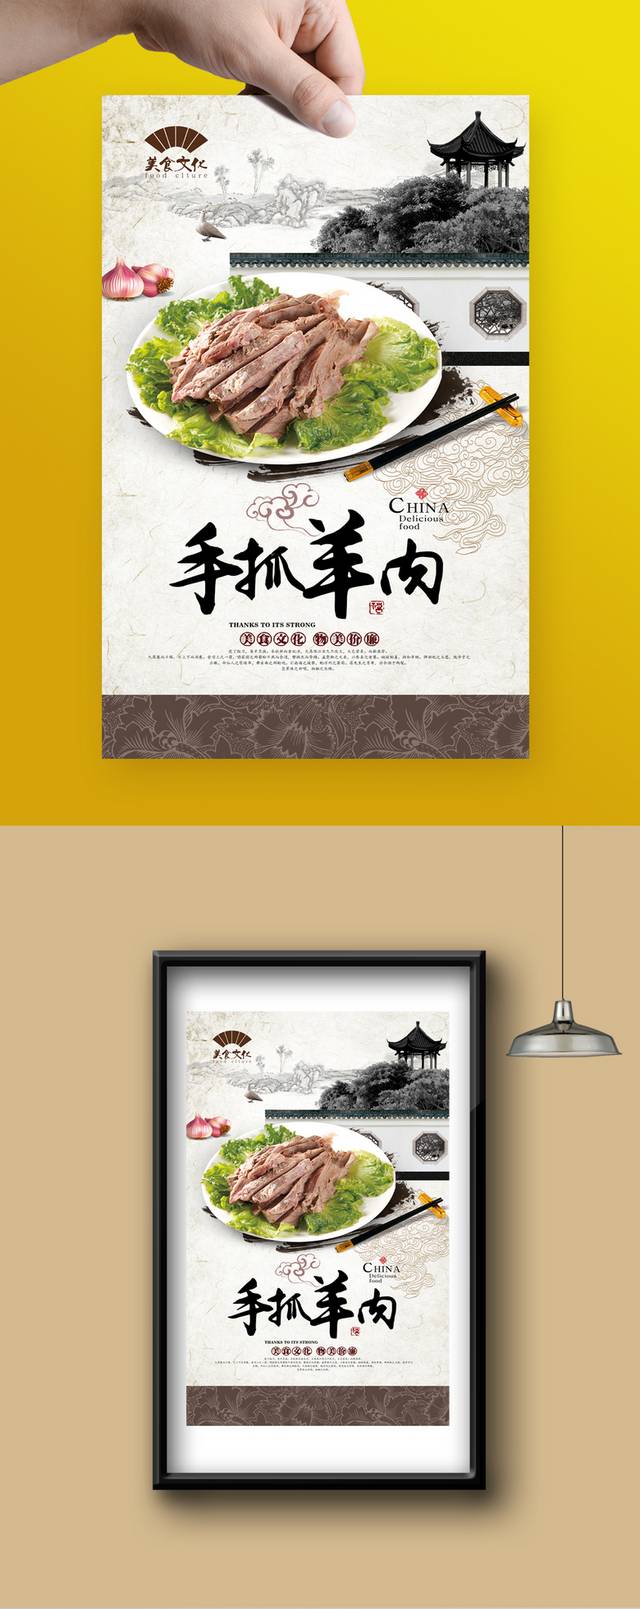 中国风手抓羊肉宣传海报设计